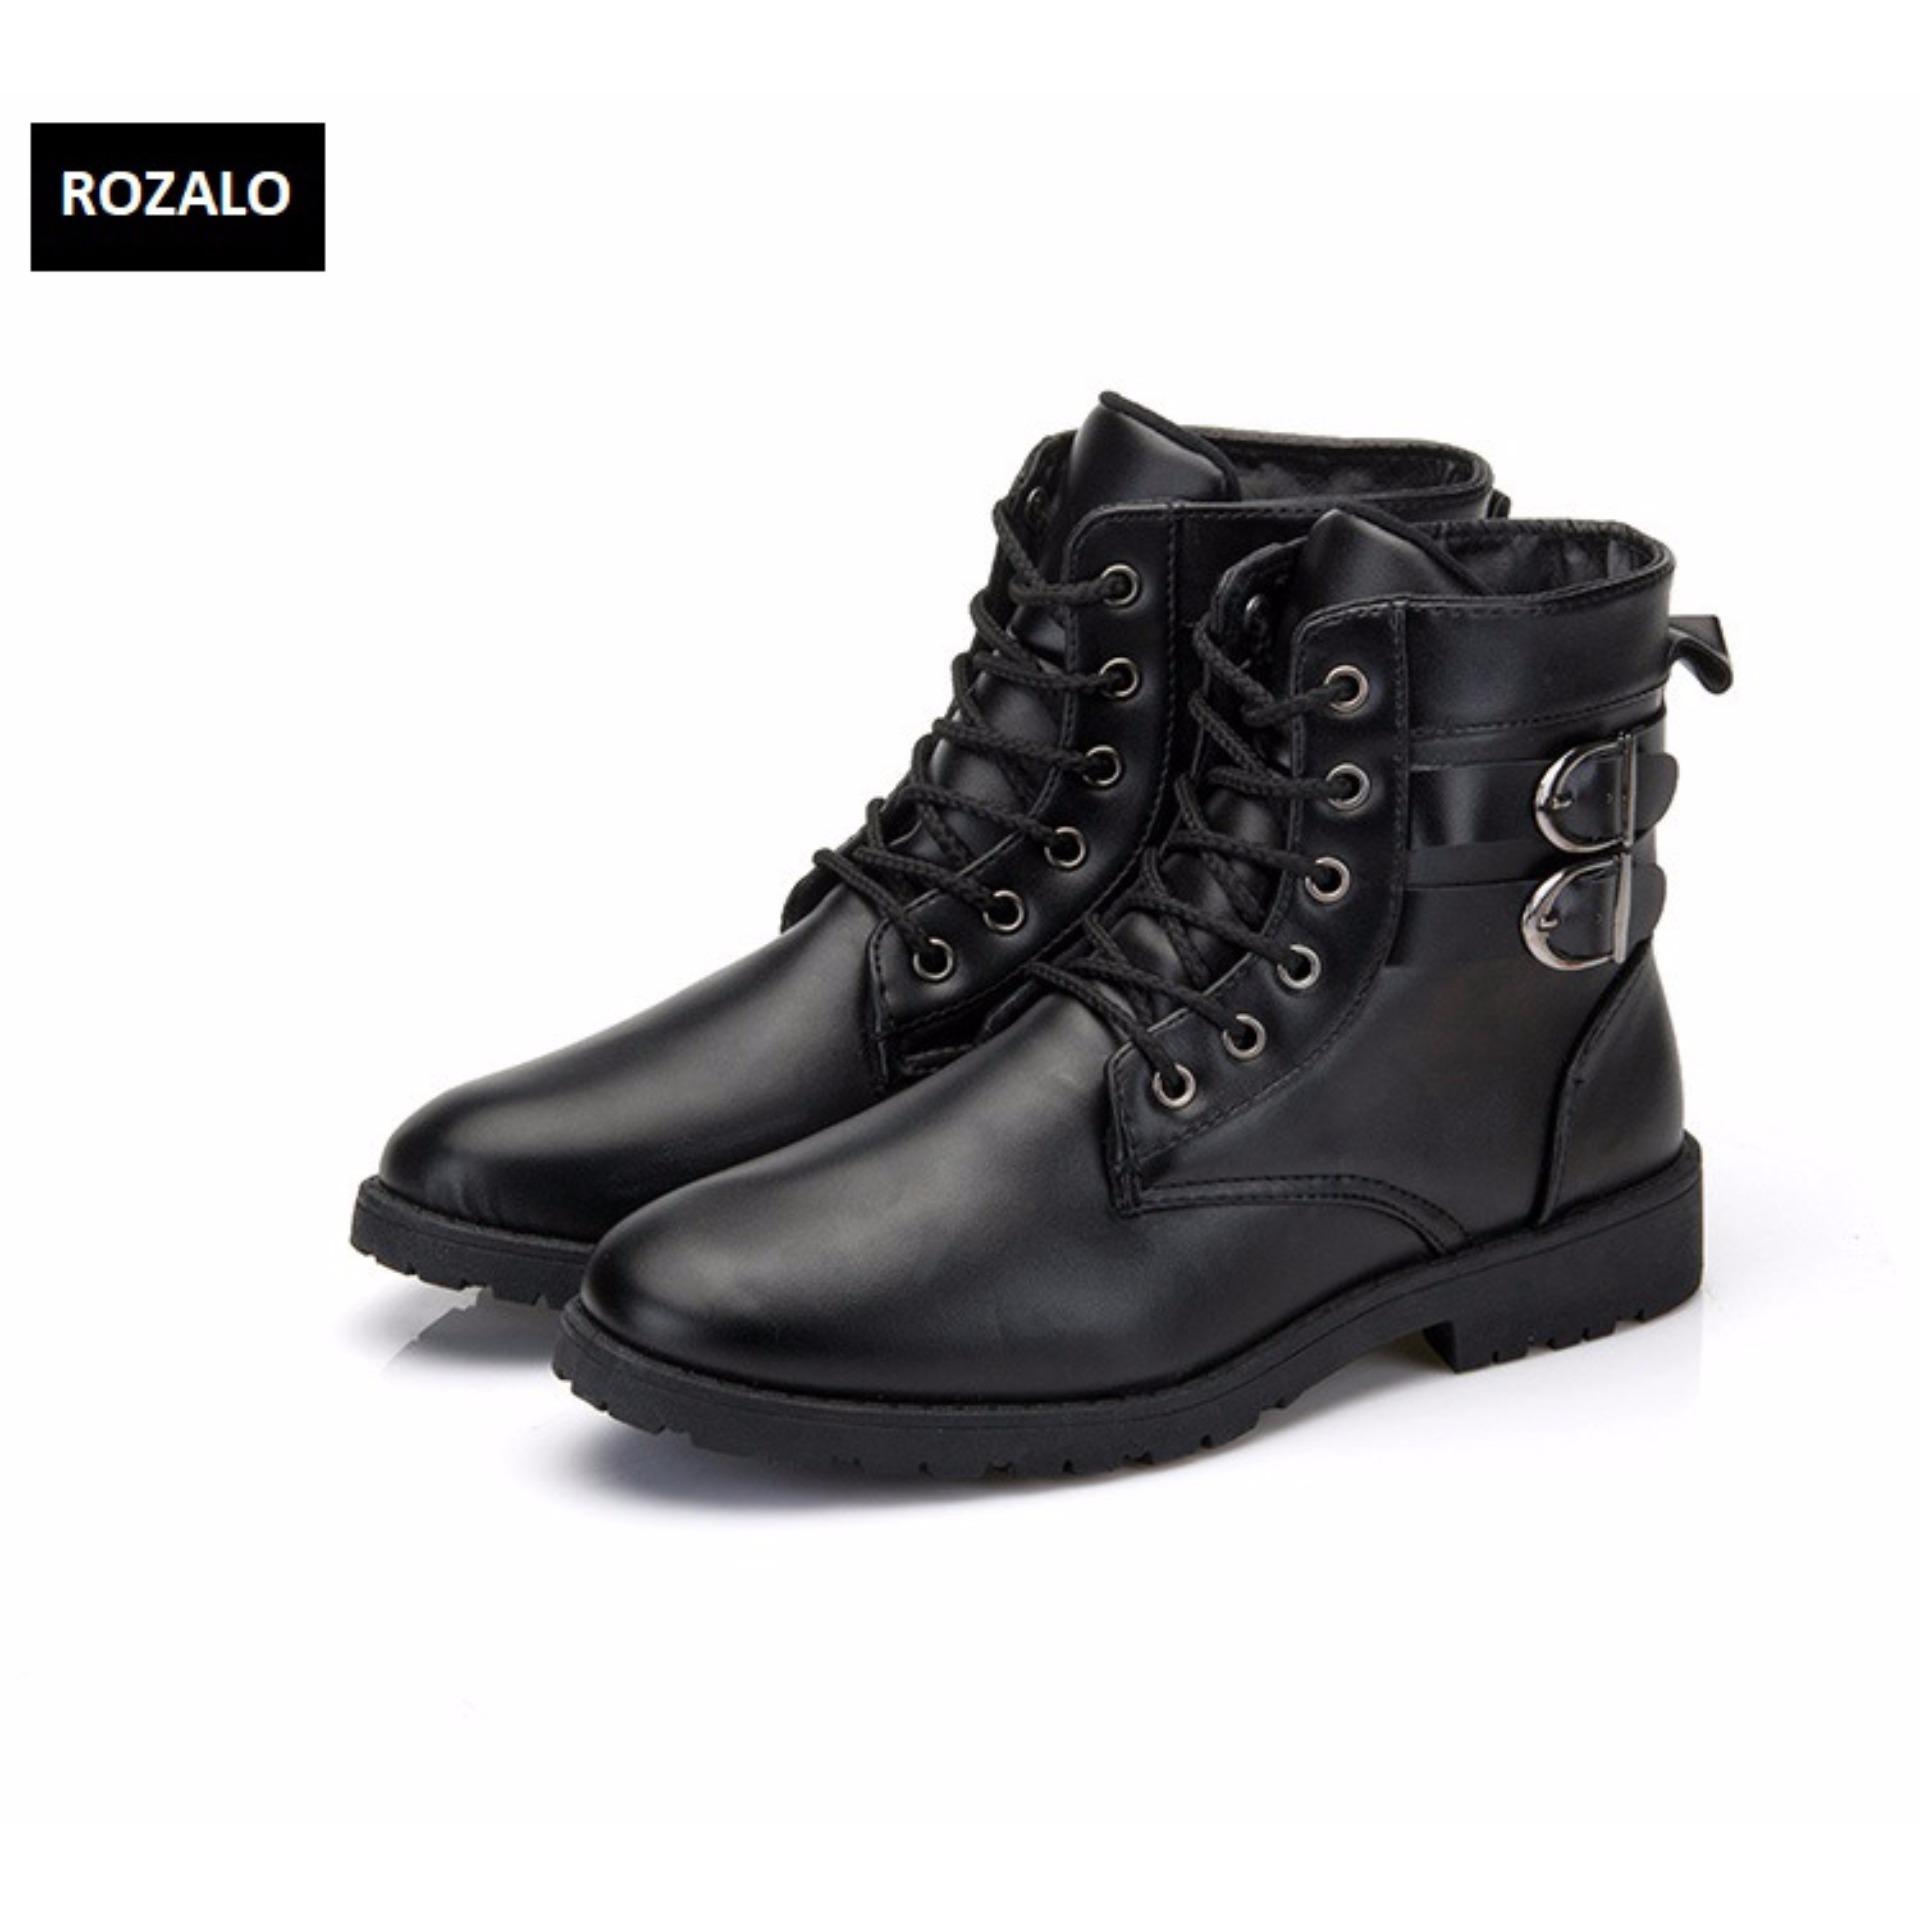 Giày boot nam cổ cao đính khuy cài kiểu quân đội Rozalo RM5281B -Đen